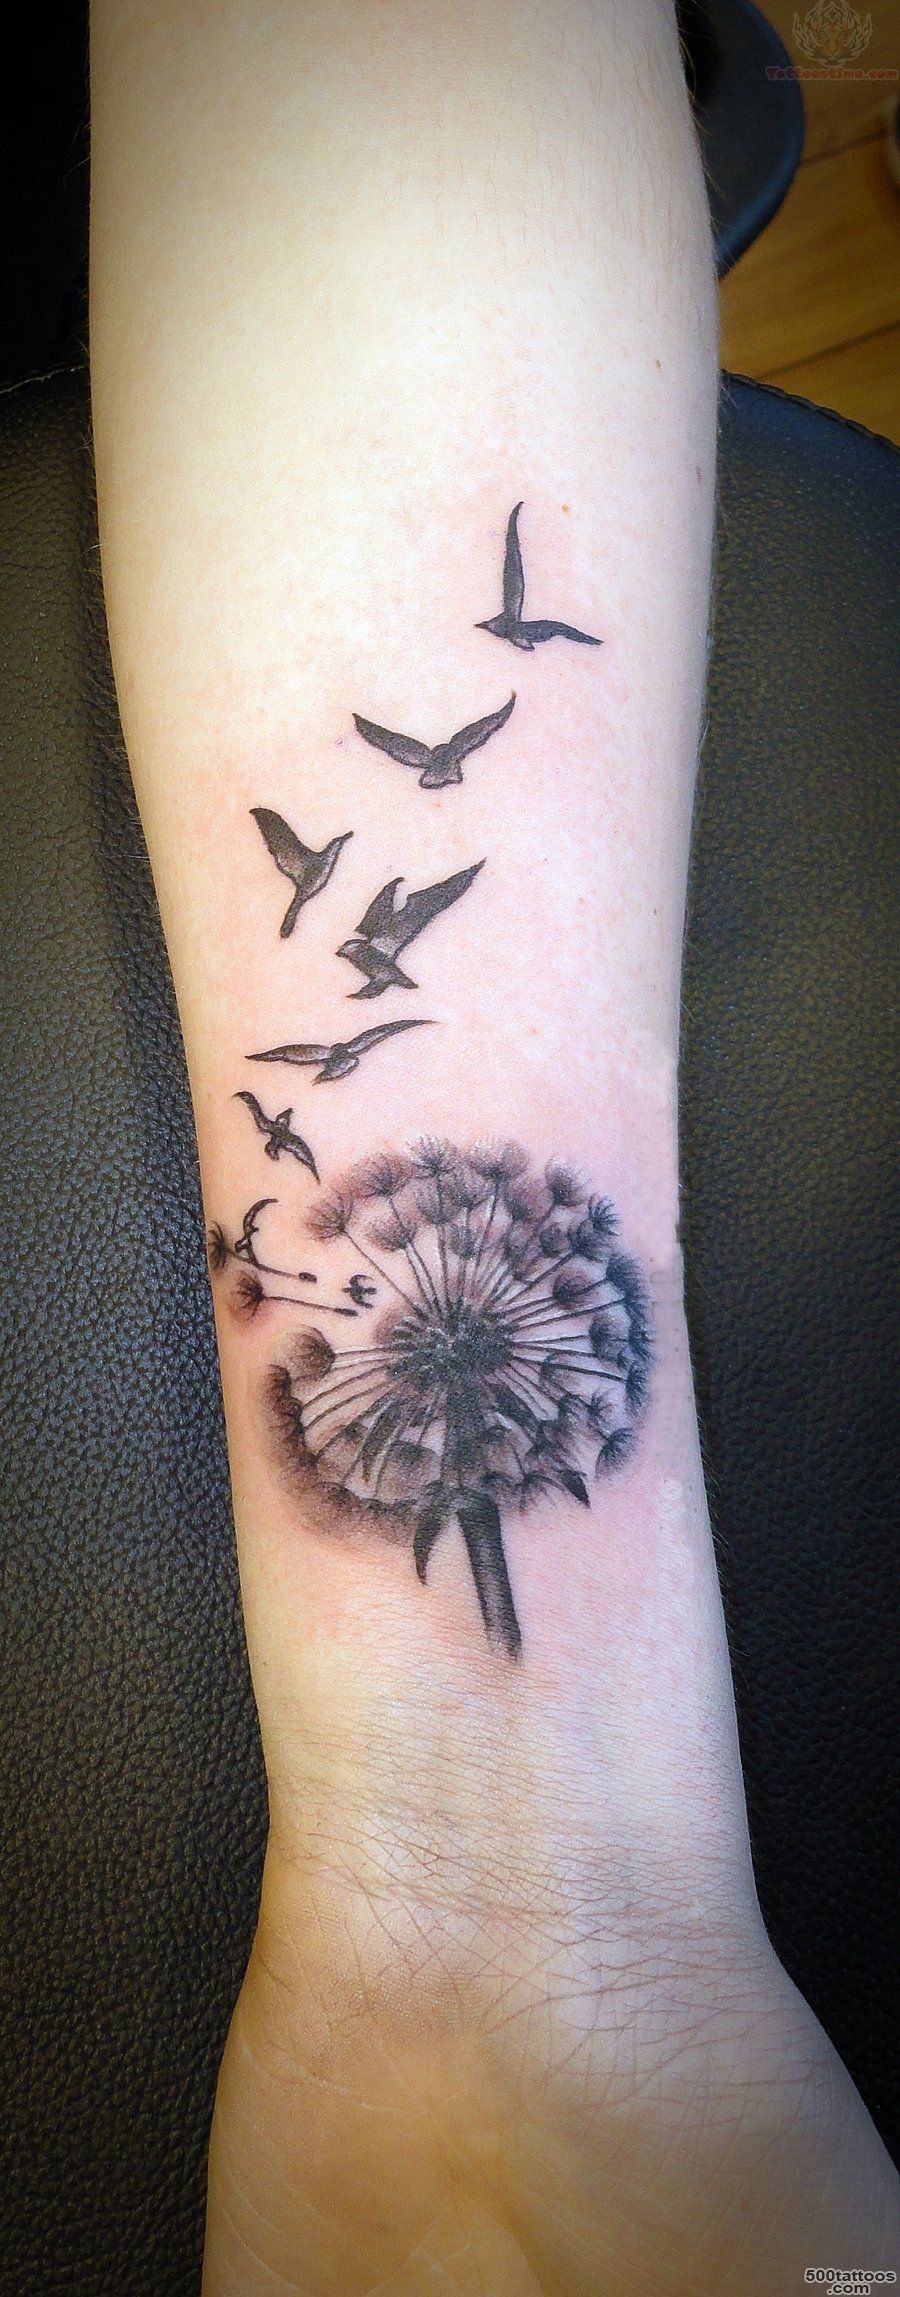 Friendship Birds Tattoo On Wrist   Tattoes Idea 2015  2016_41